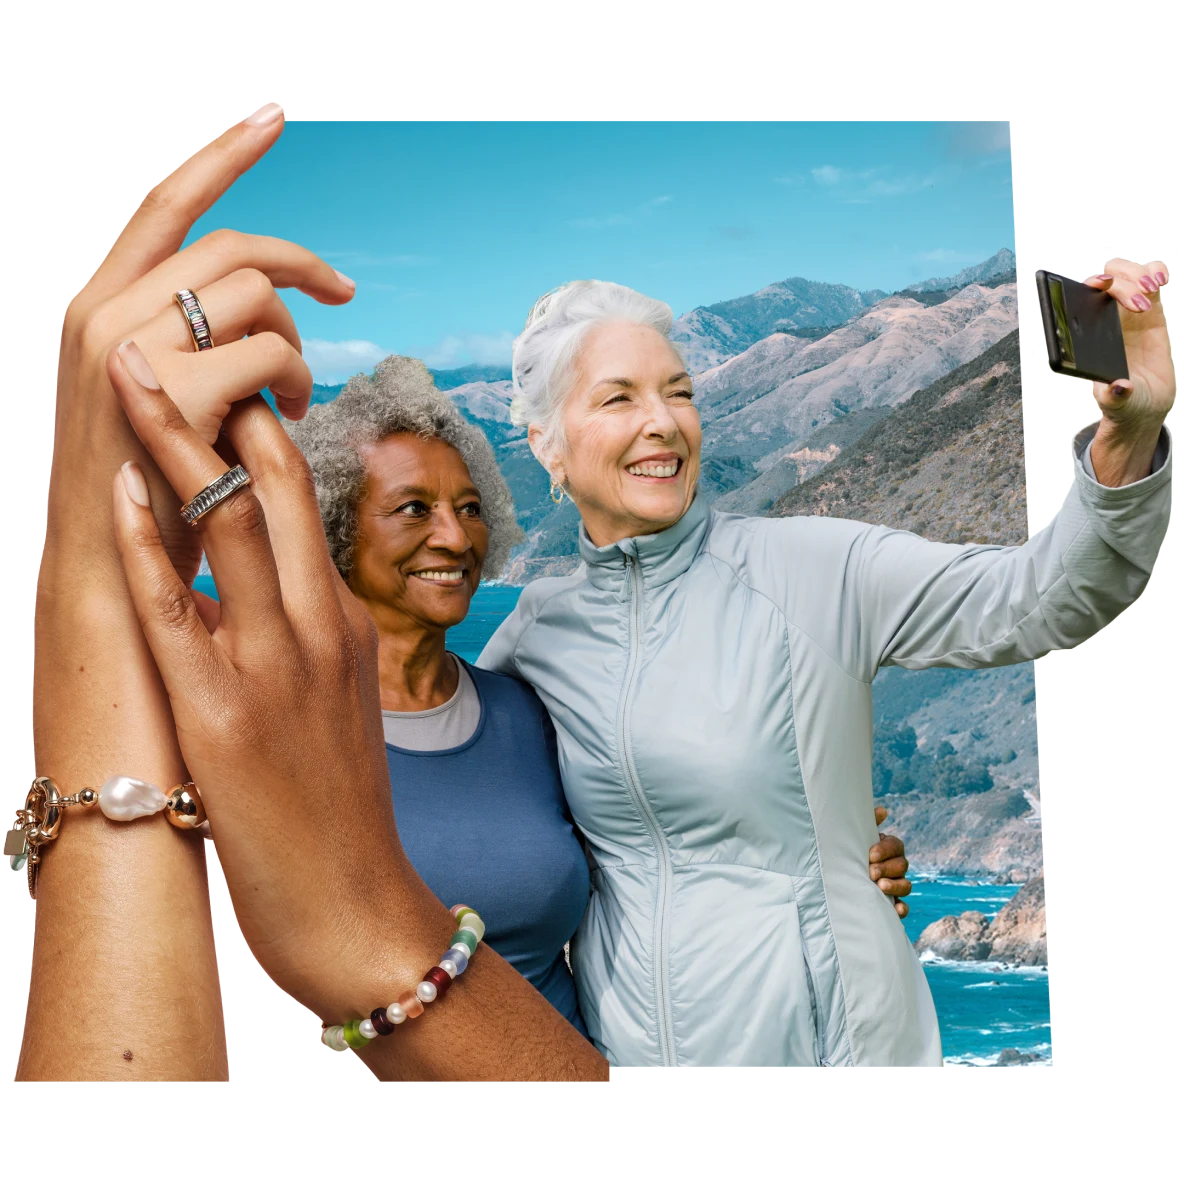 A destra, delle mani con dei braccialetti e anelli. A destra, una donna nera e una donna bianca anziane sorridono mentre si fanno un selfie con dietro delle montagne e il cielo azzurro.